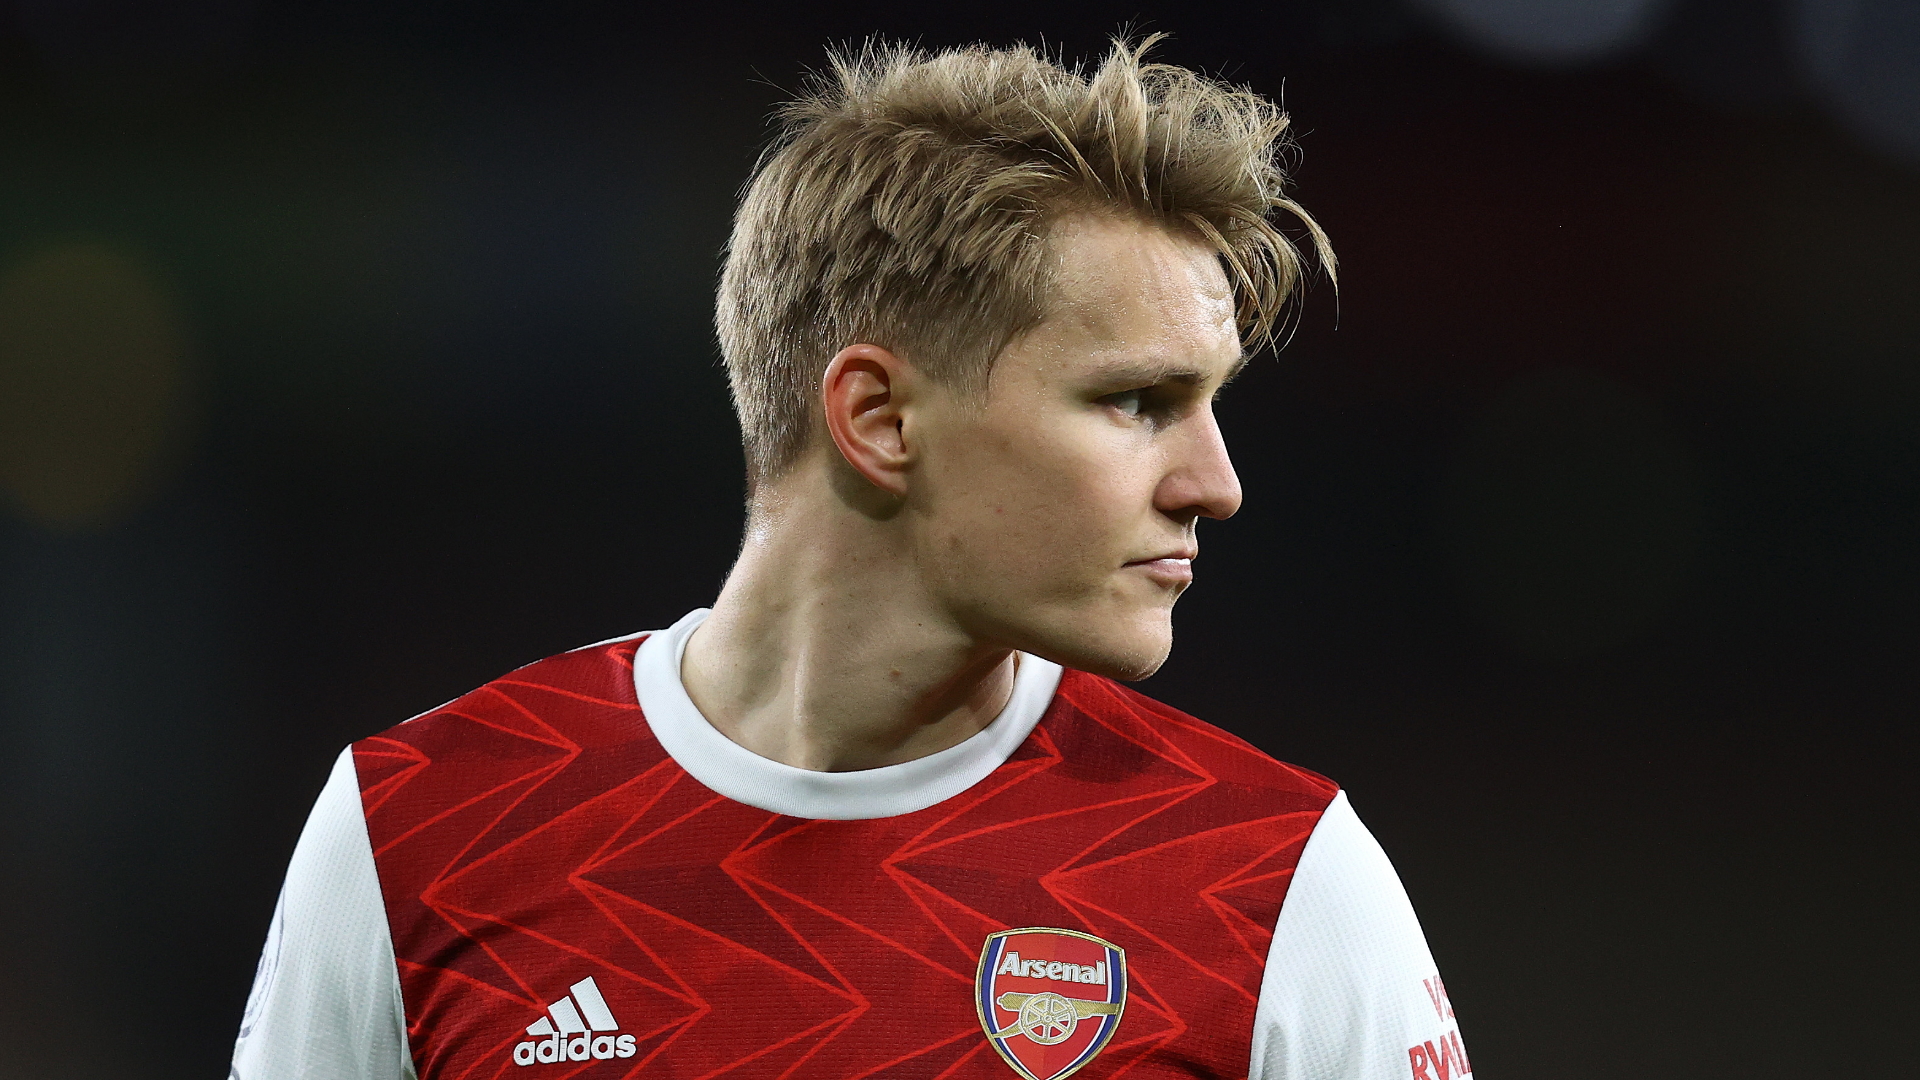 OFFICIEL - Martin Odegaard est de retour à Arsenal